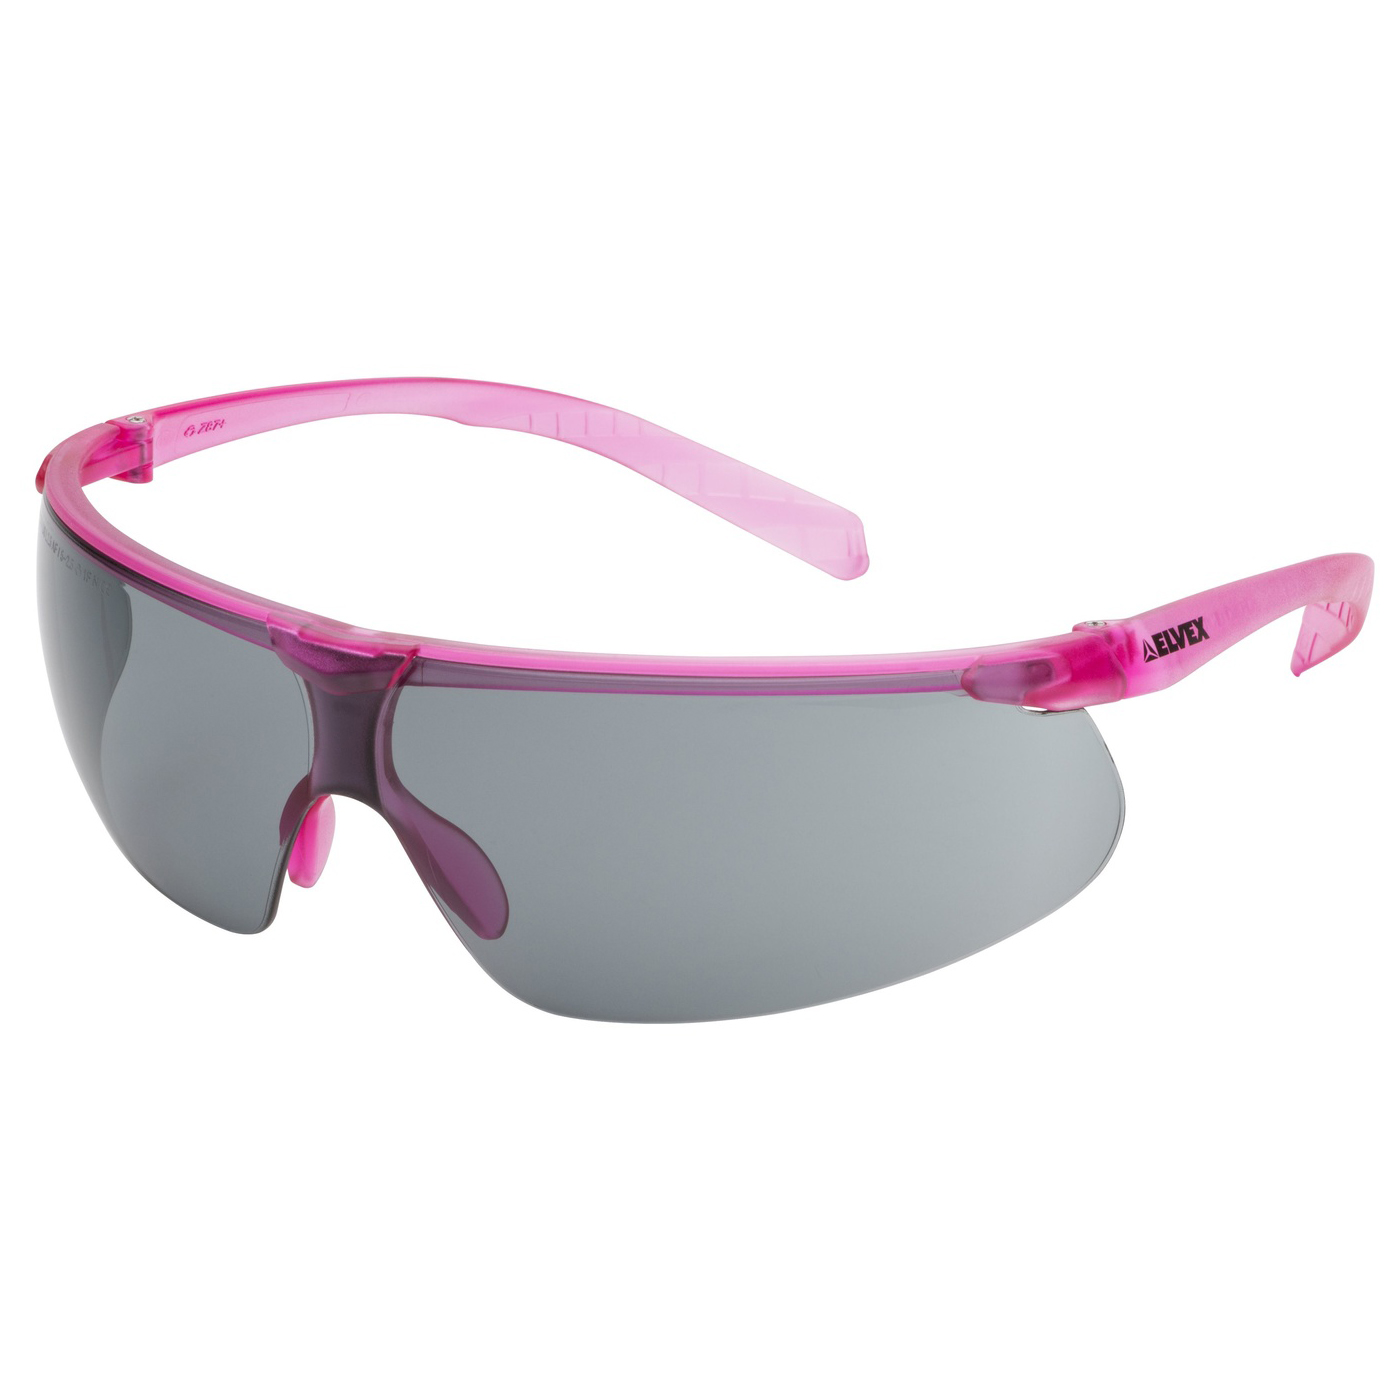 Elvex Sg 62g Af Helium 20 Safety Glasses Pink Temples Grey Supercoat Anti Fog Lens Full Source